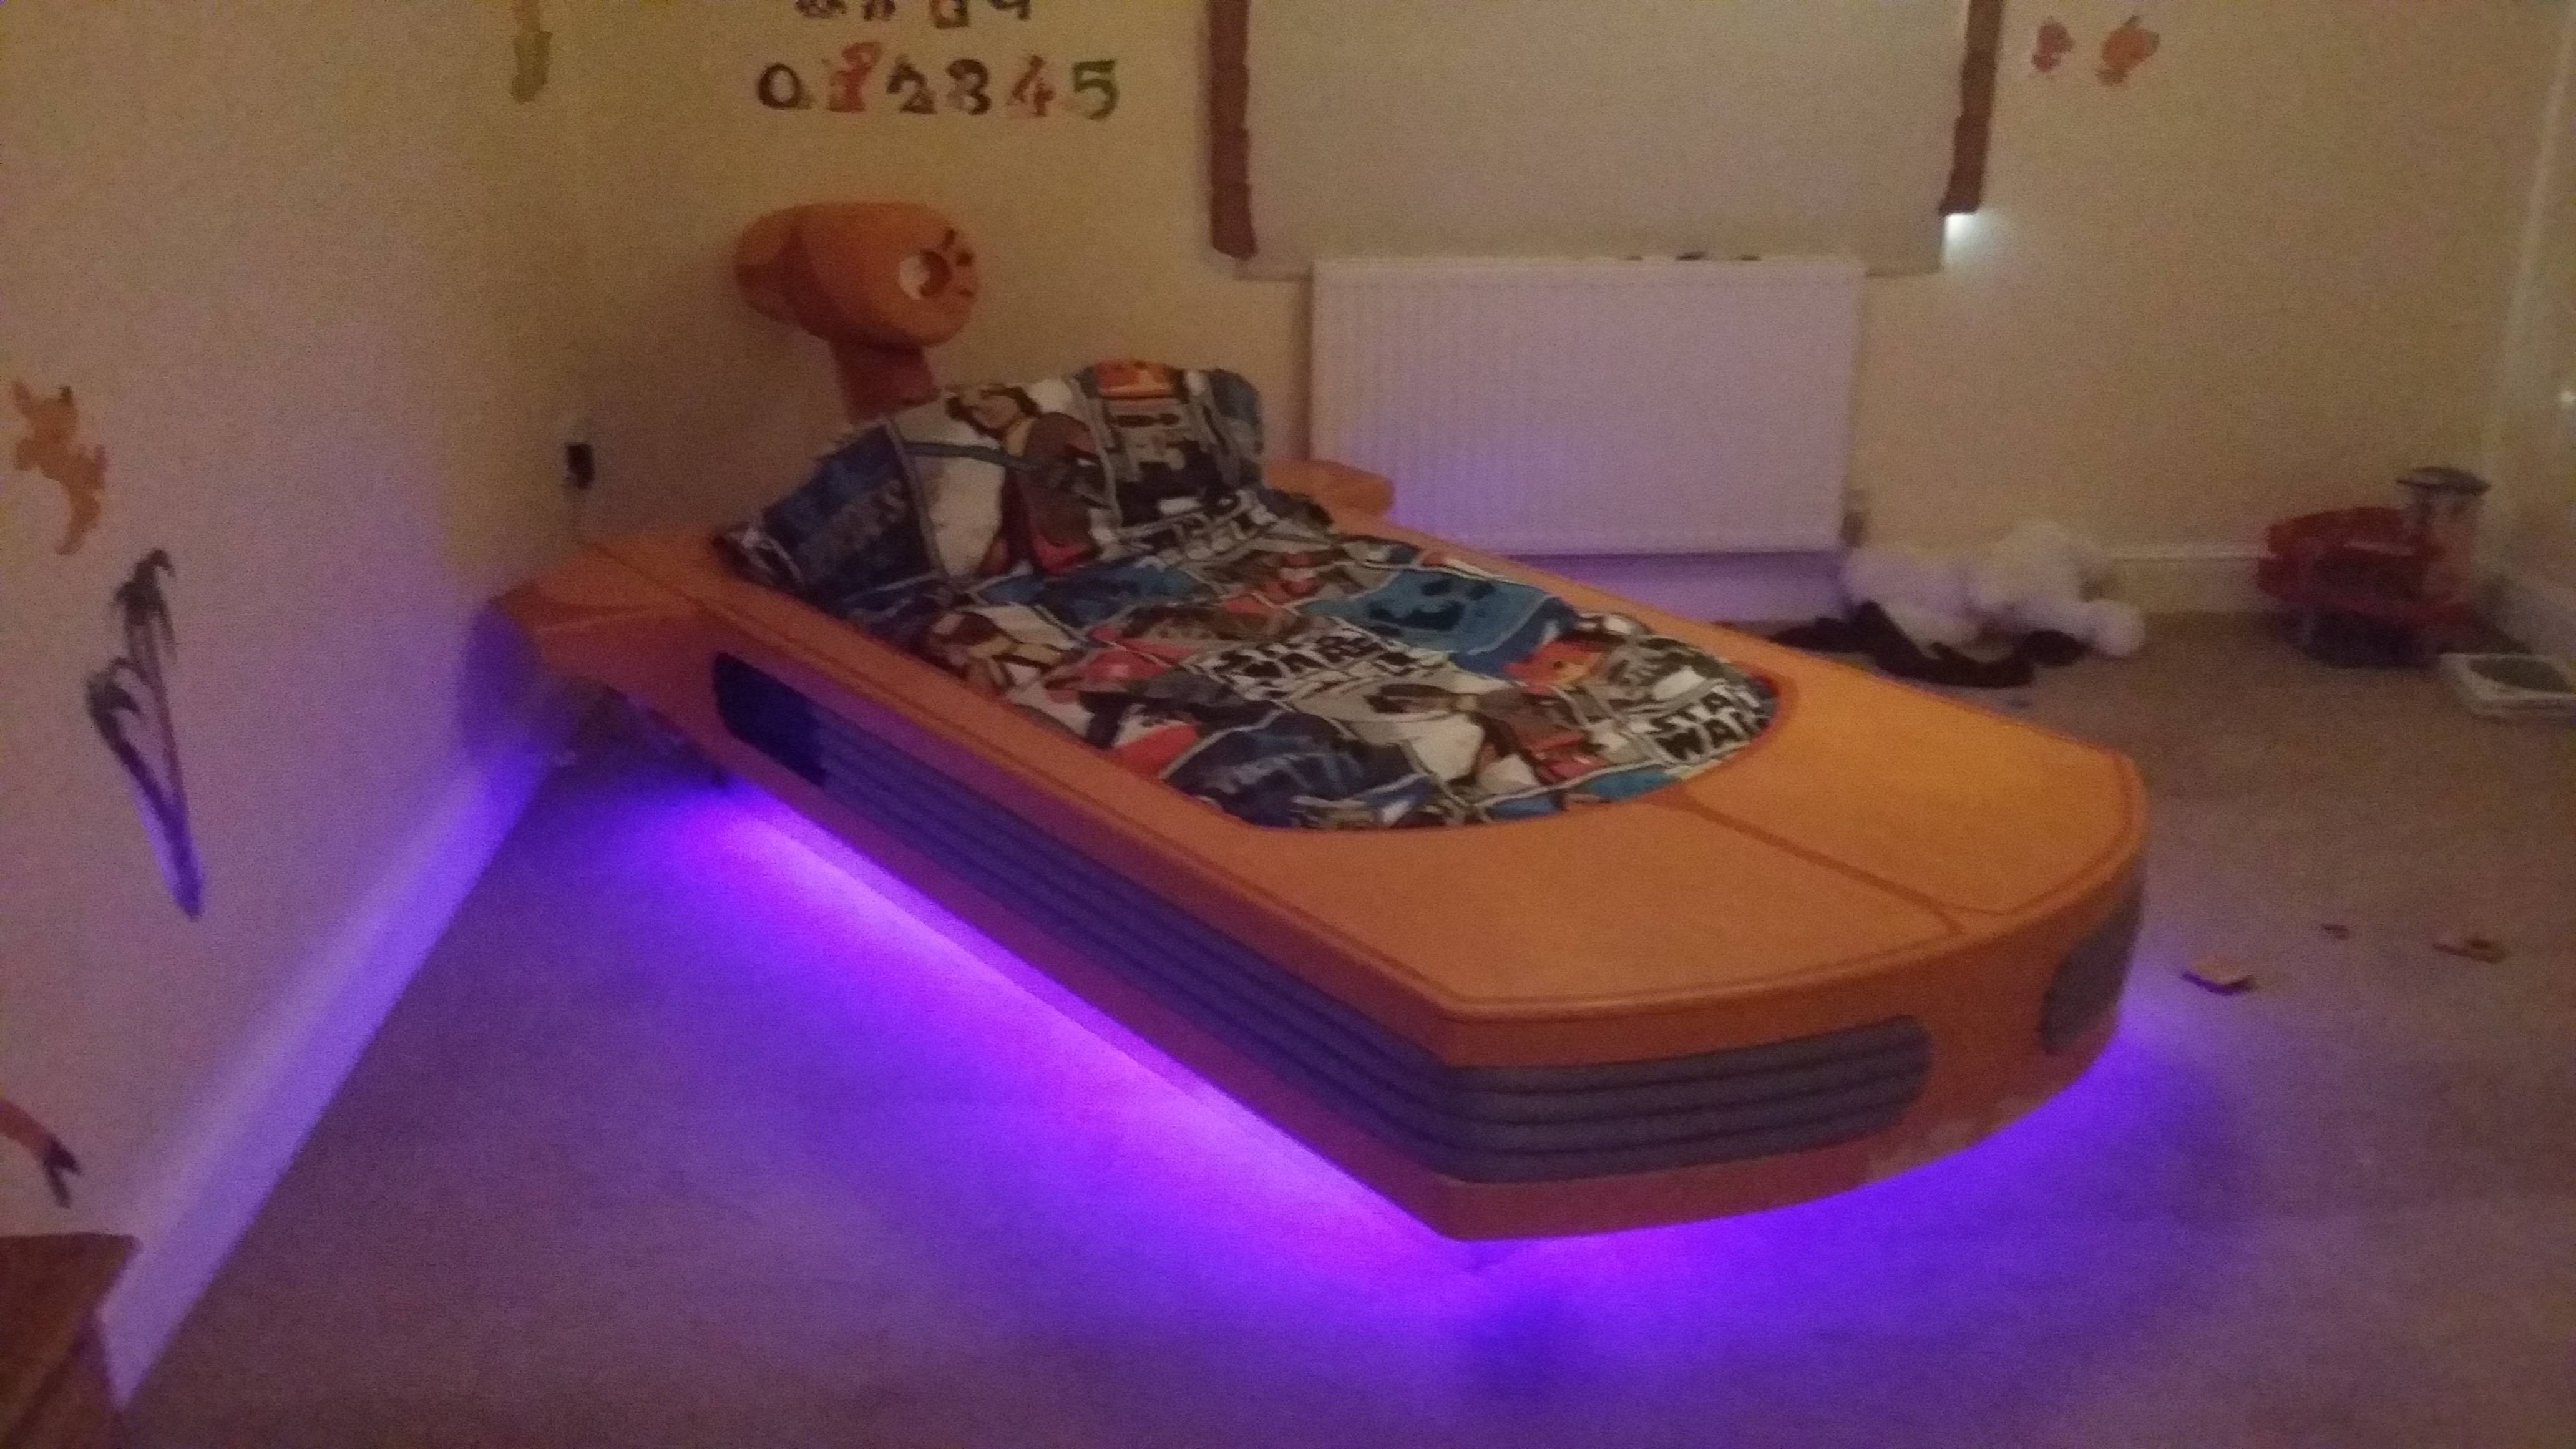 star wars floating landspeeder bed glowing LED lighting platform DIY kids bedroom design tips ideas inspiration best dad ever force awakens Jedi empire luke skywalker